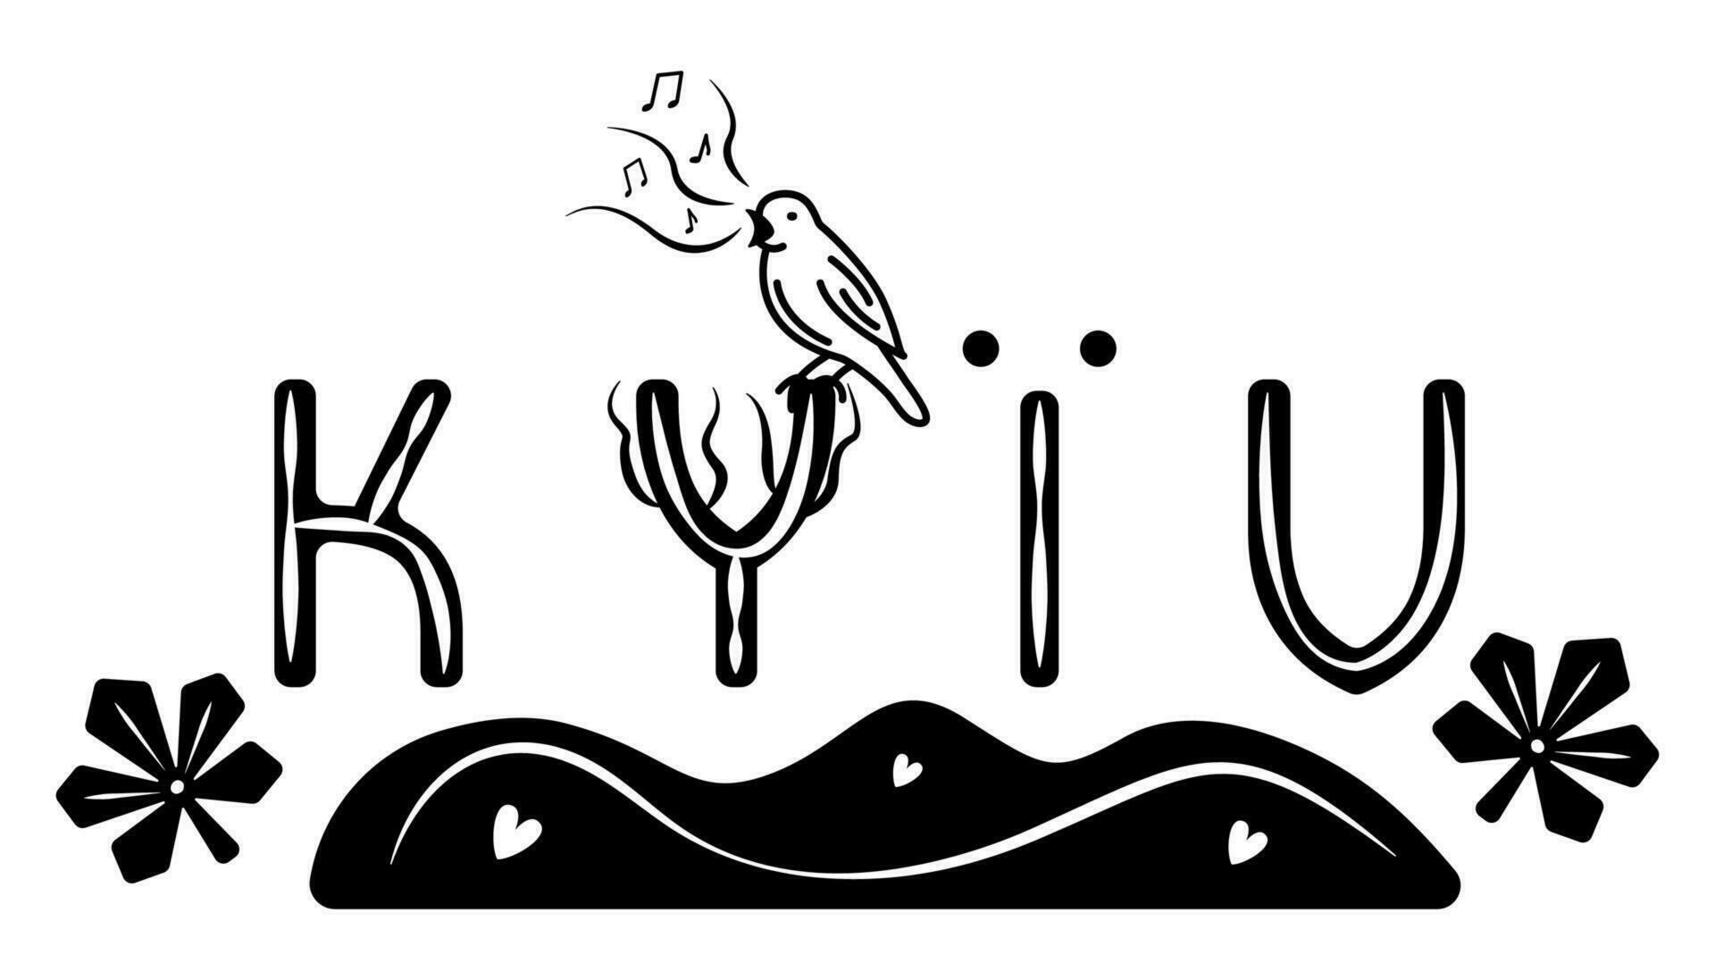 kyiv Stampa lettere e simboli, nero e bianca vettore illustrazione